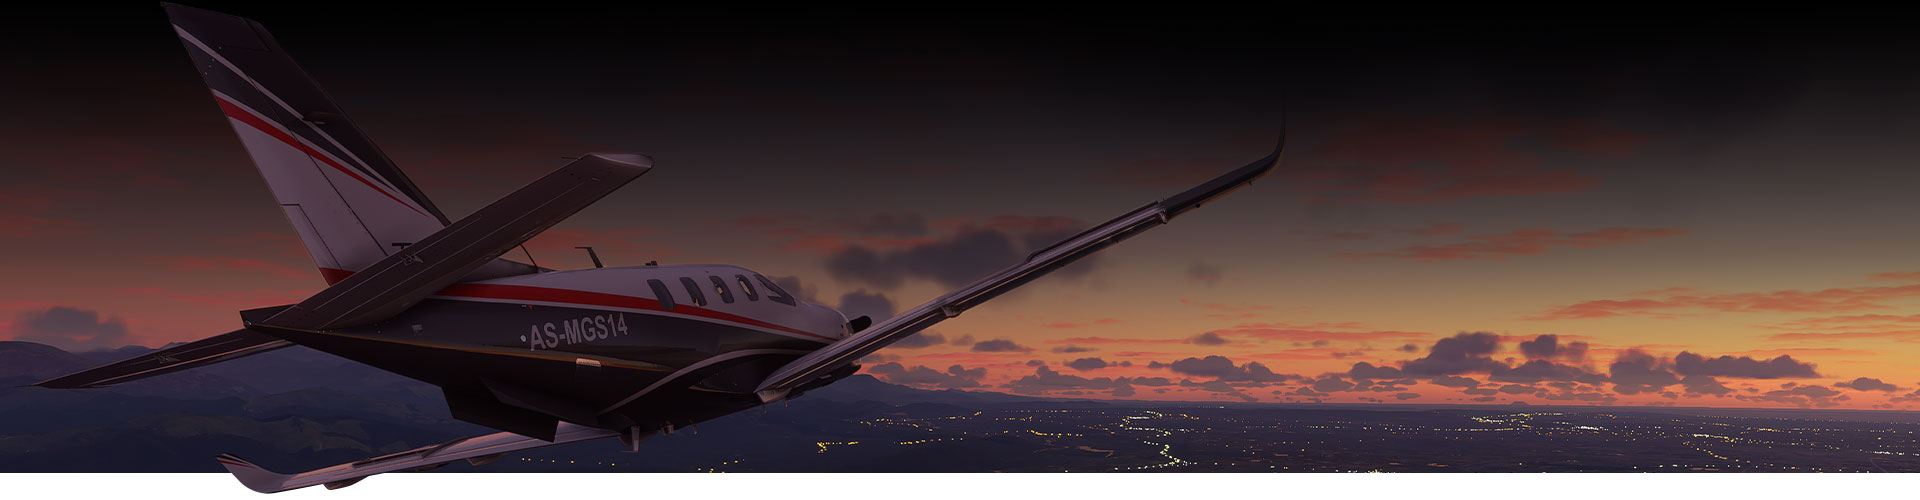 Avion de Microsoft Flight Simulator volant au-dessus dʼune ville au coucher du soleil